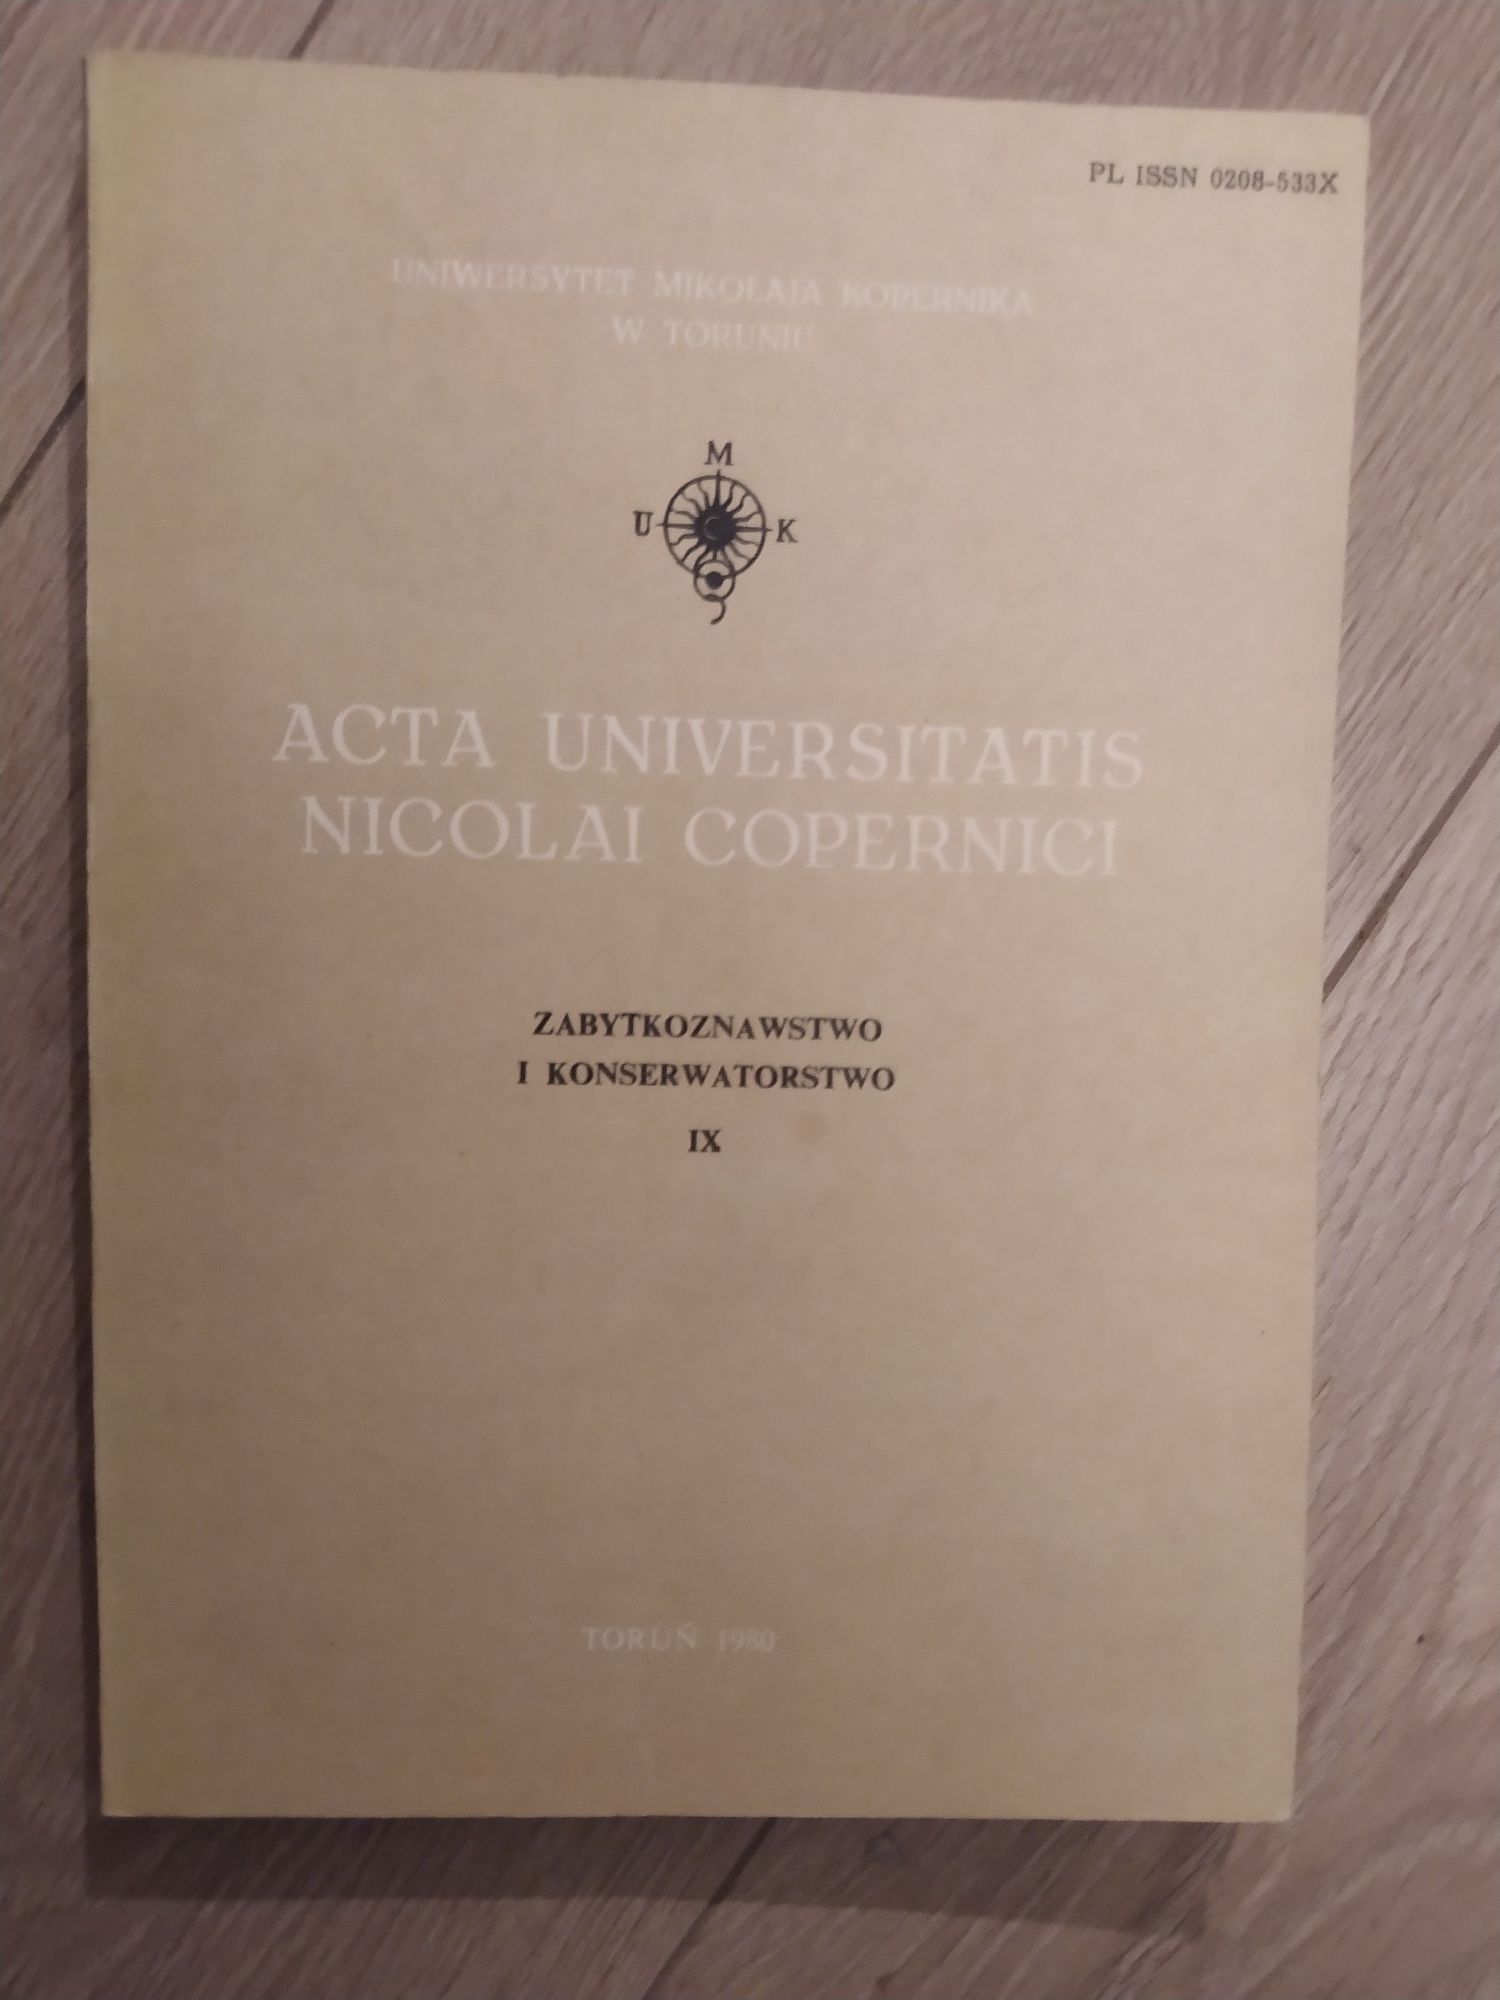 Zabytkoznawstwo i konserwatorstwo nr XI - UMK -  Acta Universitatis...